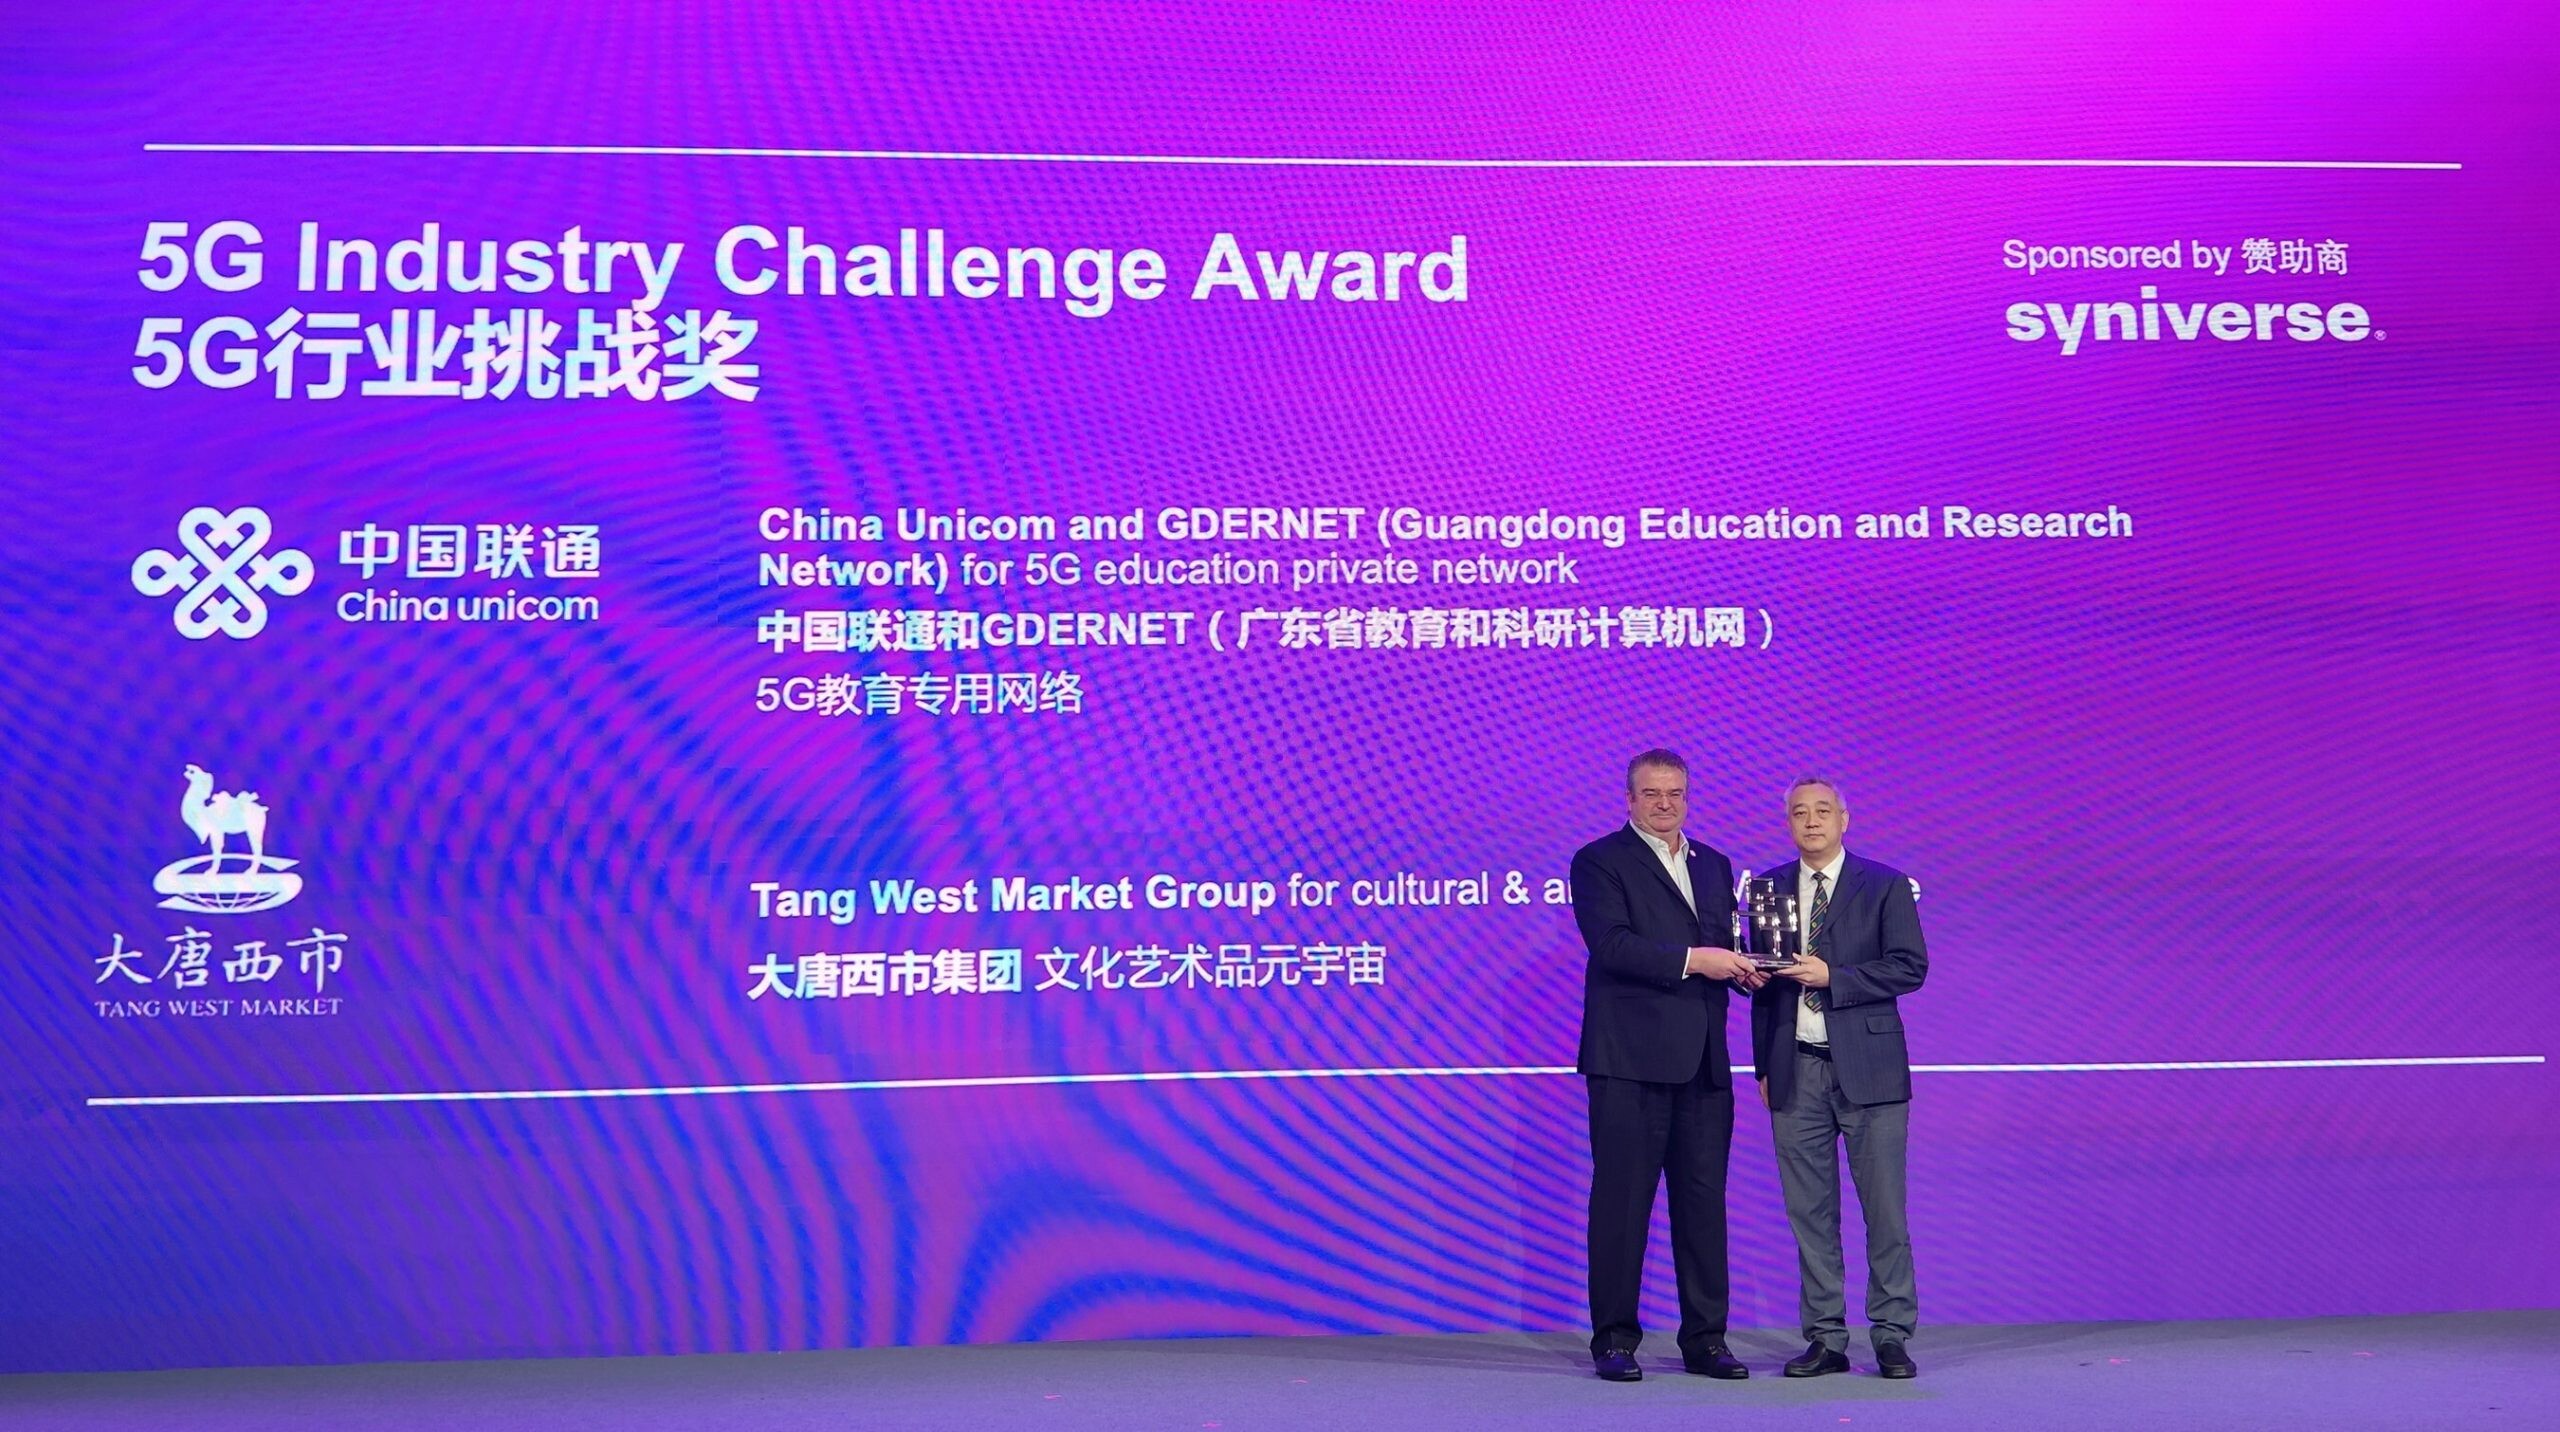 แซดทีอี ช่วยให้ ถัง เวสต์ มาร์เก็ต กรุ๊ป คว้ารางวัลอันทรงเกียรติ 5G Industry Challenge Award จากเวทีจีเอสเอ็มเอ เอเชีย โมบายล์ อวอร์ดส์